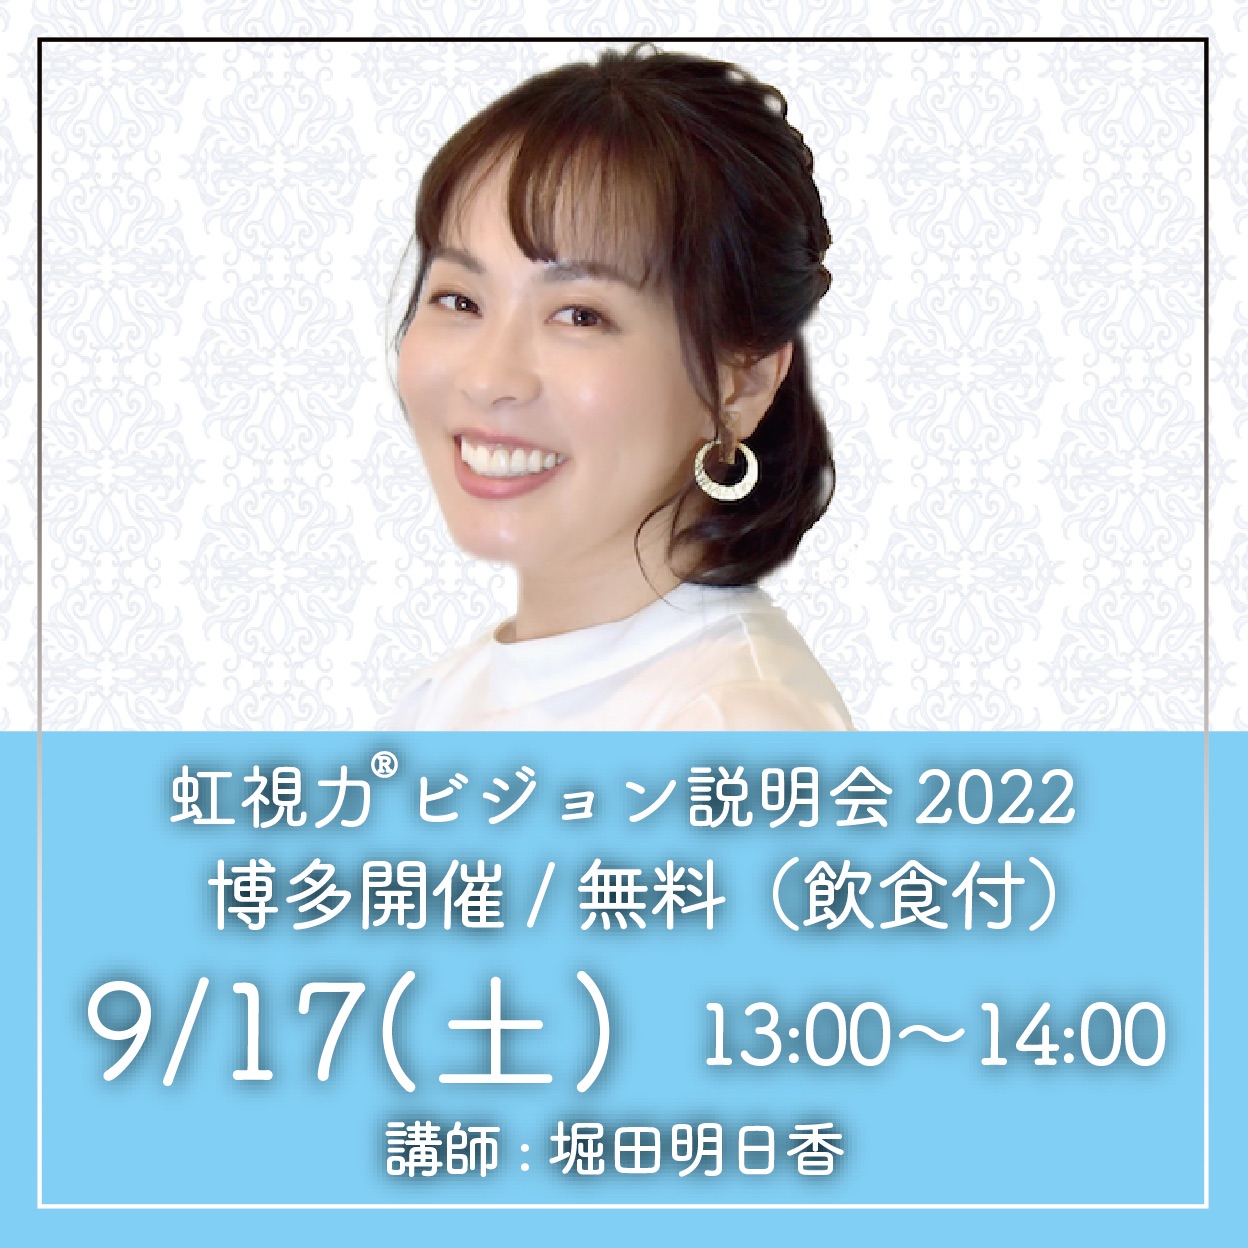 【堀田あすかのブログ】9/17福岡で虹視力ビジョン説明会を行います